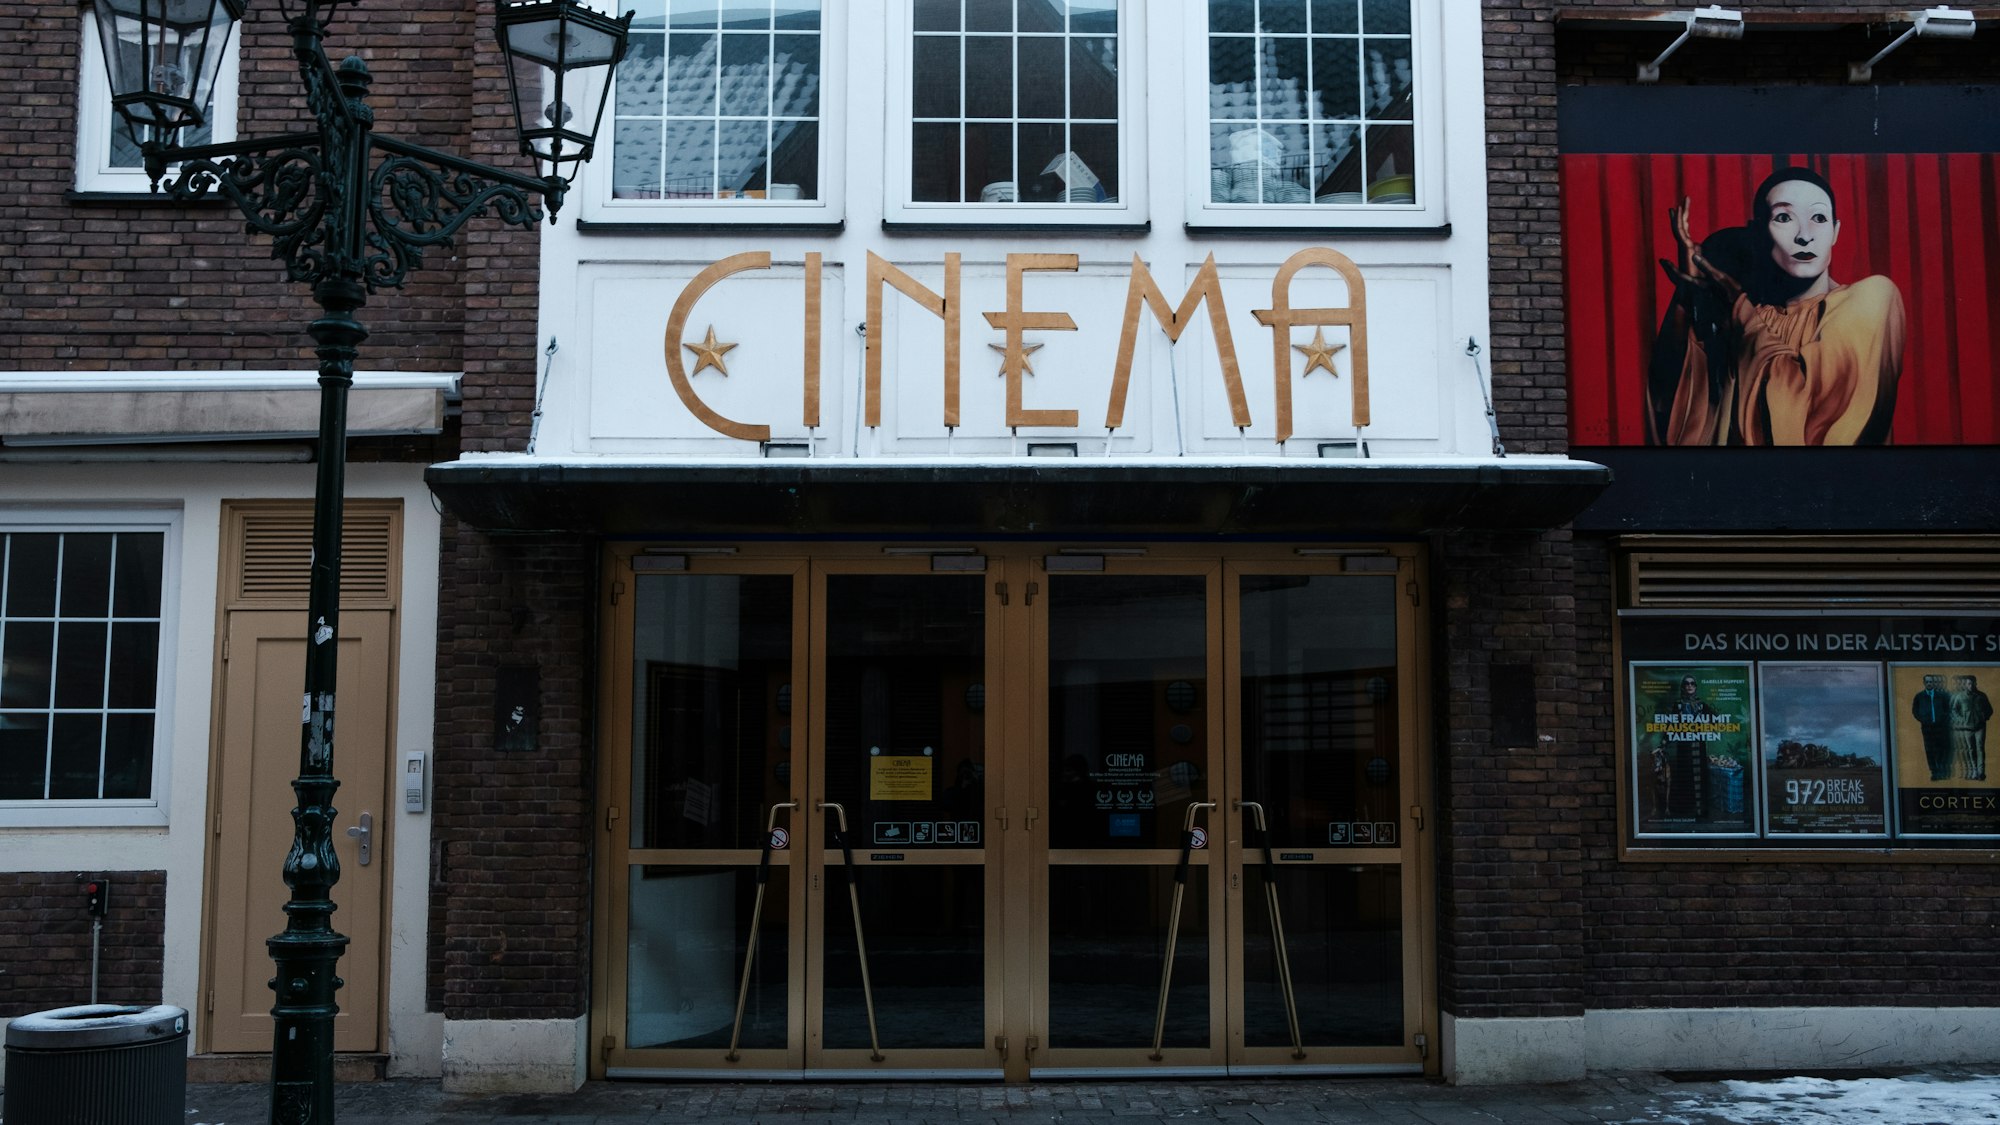 An Old Cinema